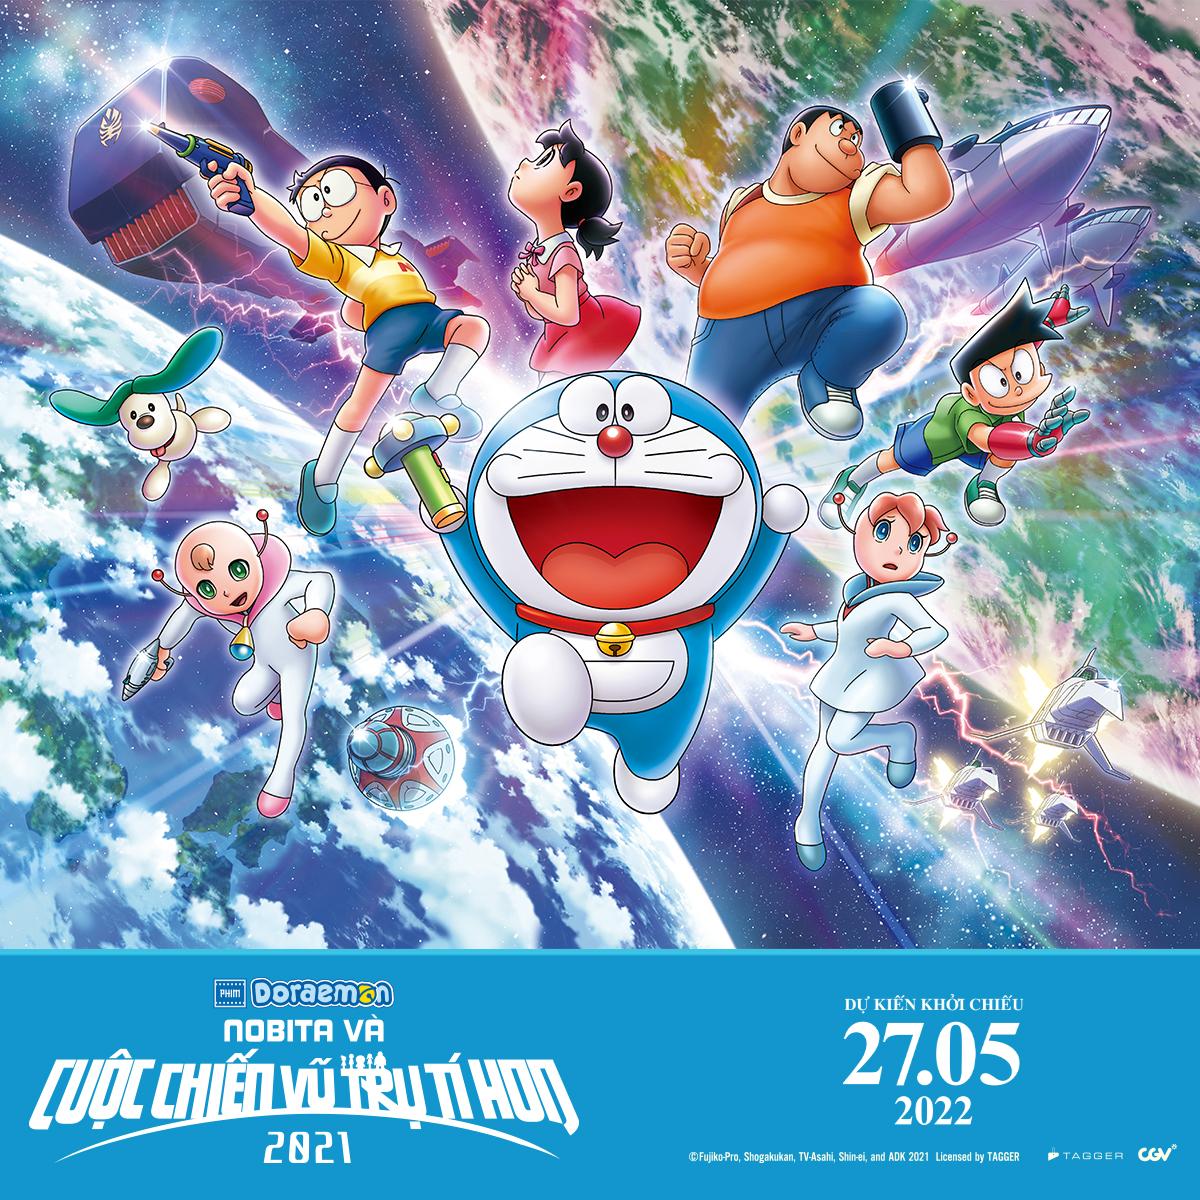 Thế giới diệu kỳ Doraemon: Doraemon luôn là niềm mơ ước của bao thế hệ các em nhỏ trên thế giới, với những công cụ tuyệt vời từ túi thần kỳ. Hãy thưởng thức cùng thế giới diệu kỳ này và tìm hiểu thêm về lịch sử và các chương trình liên quan đến Doraemon. Bấm vào hình ảnh để khám phá thêm!